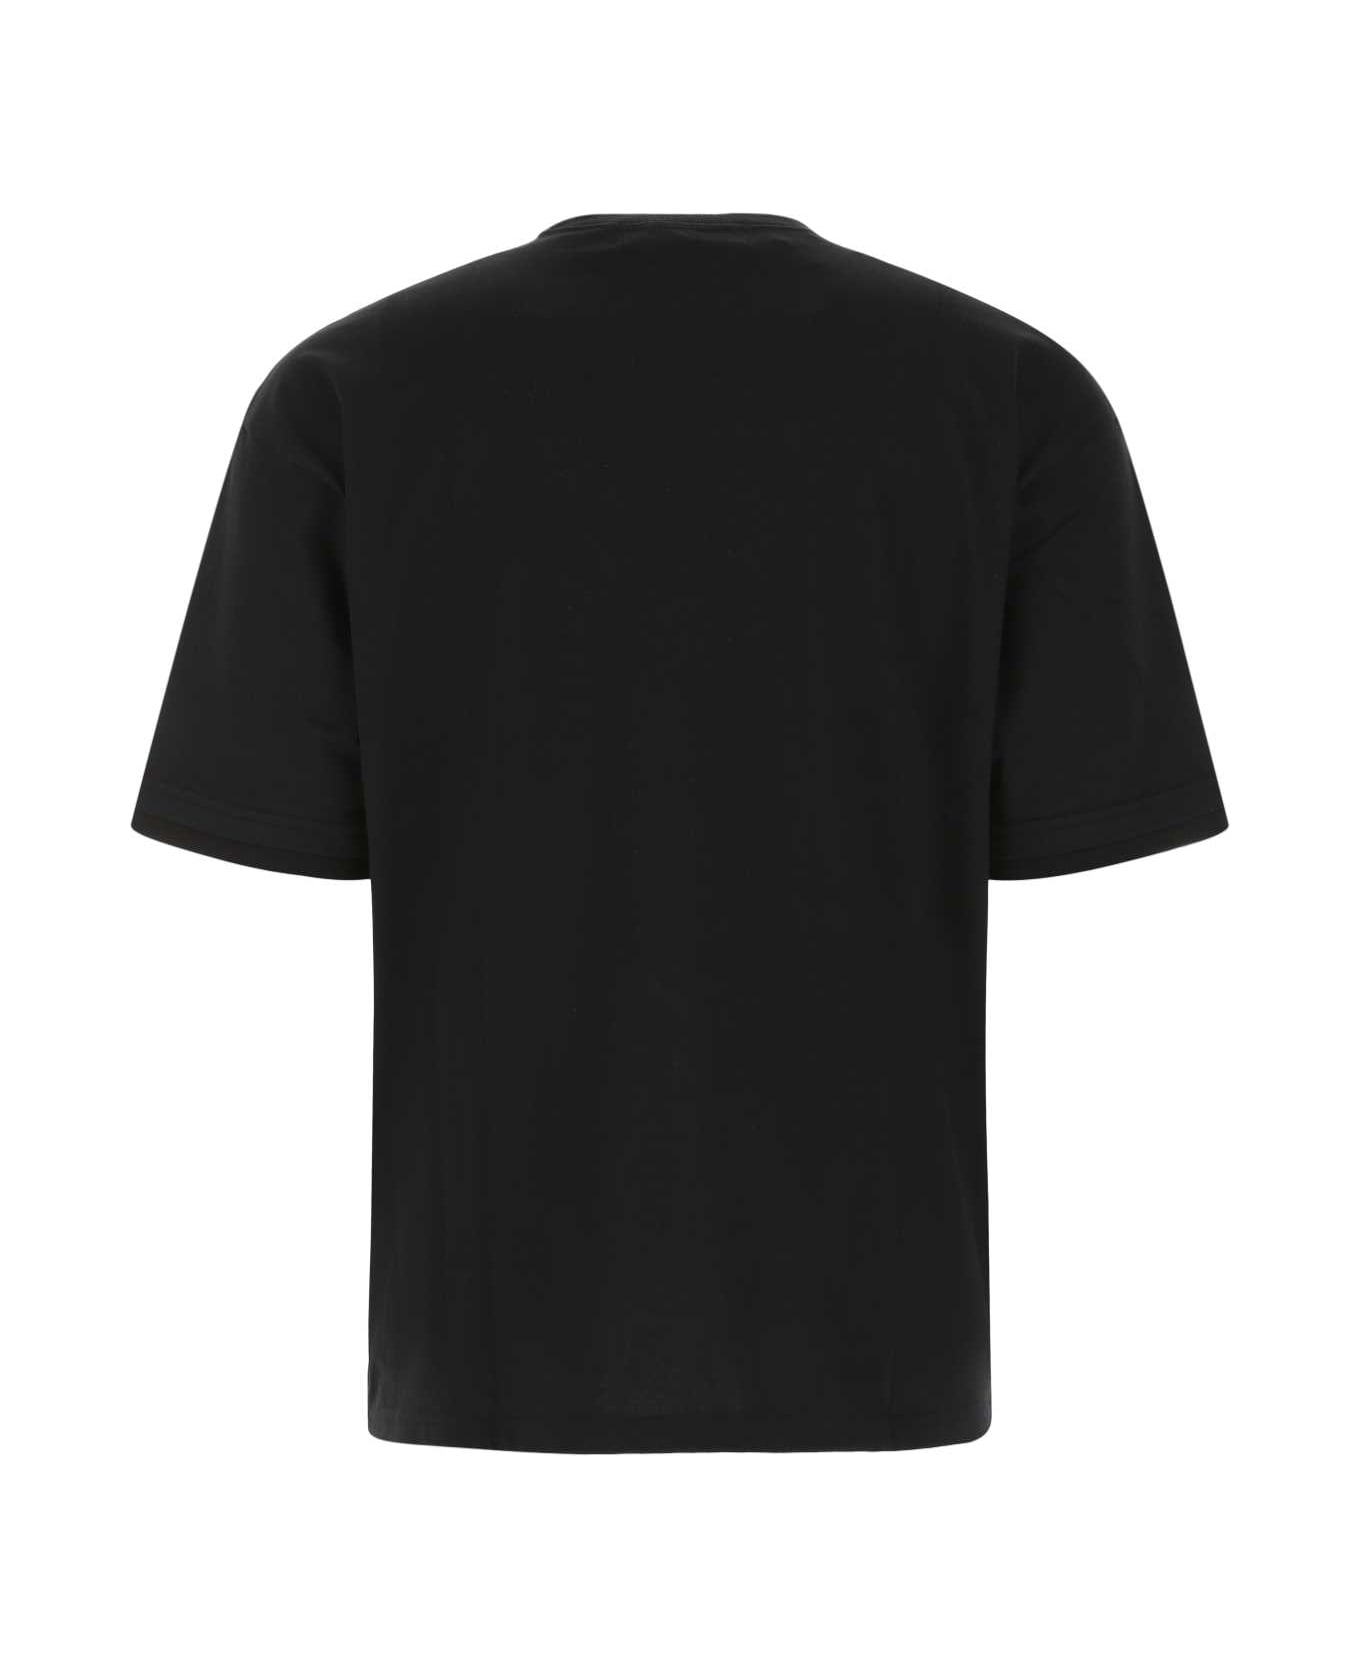 AMBUSH Black Cotton T-shirt - 1003